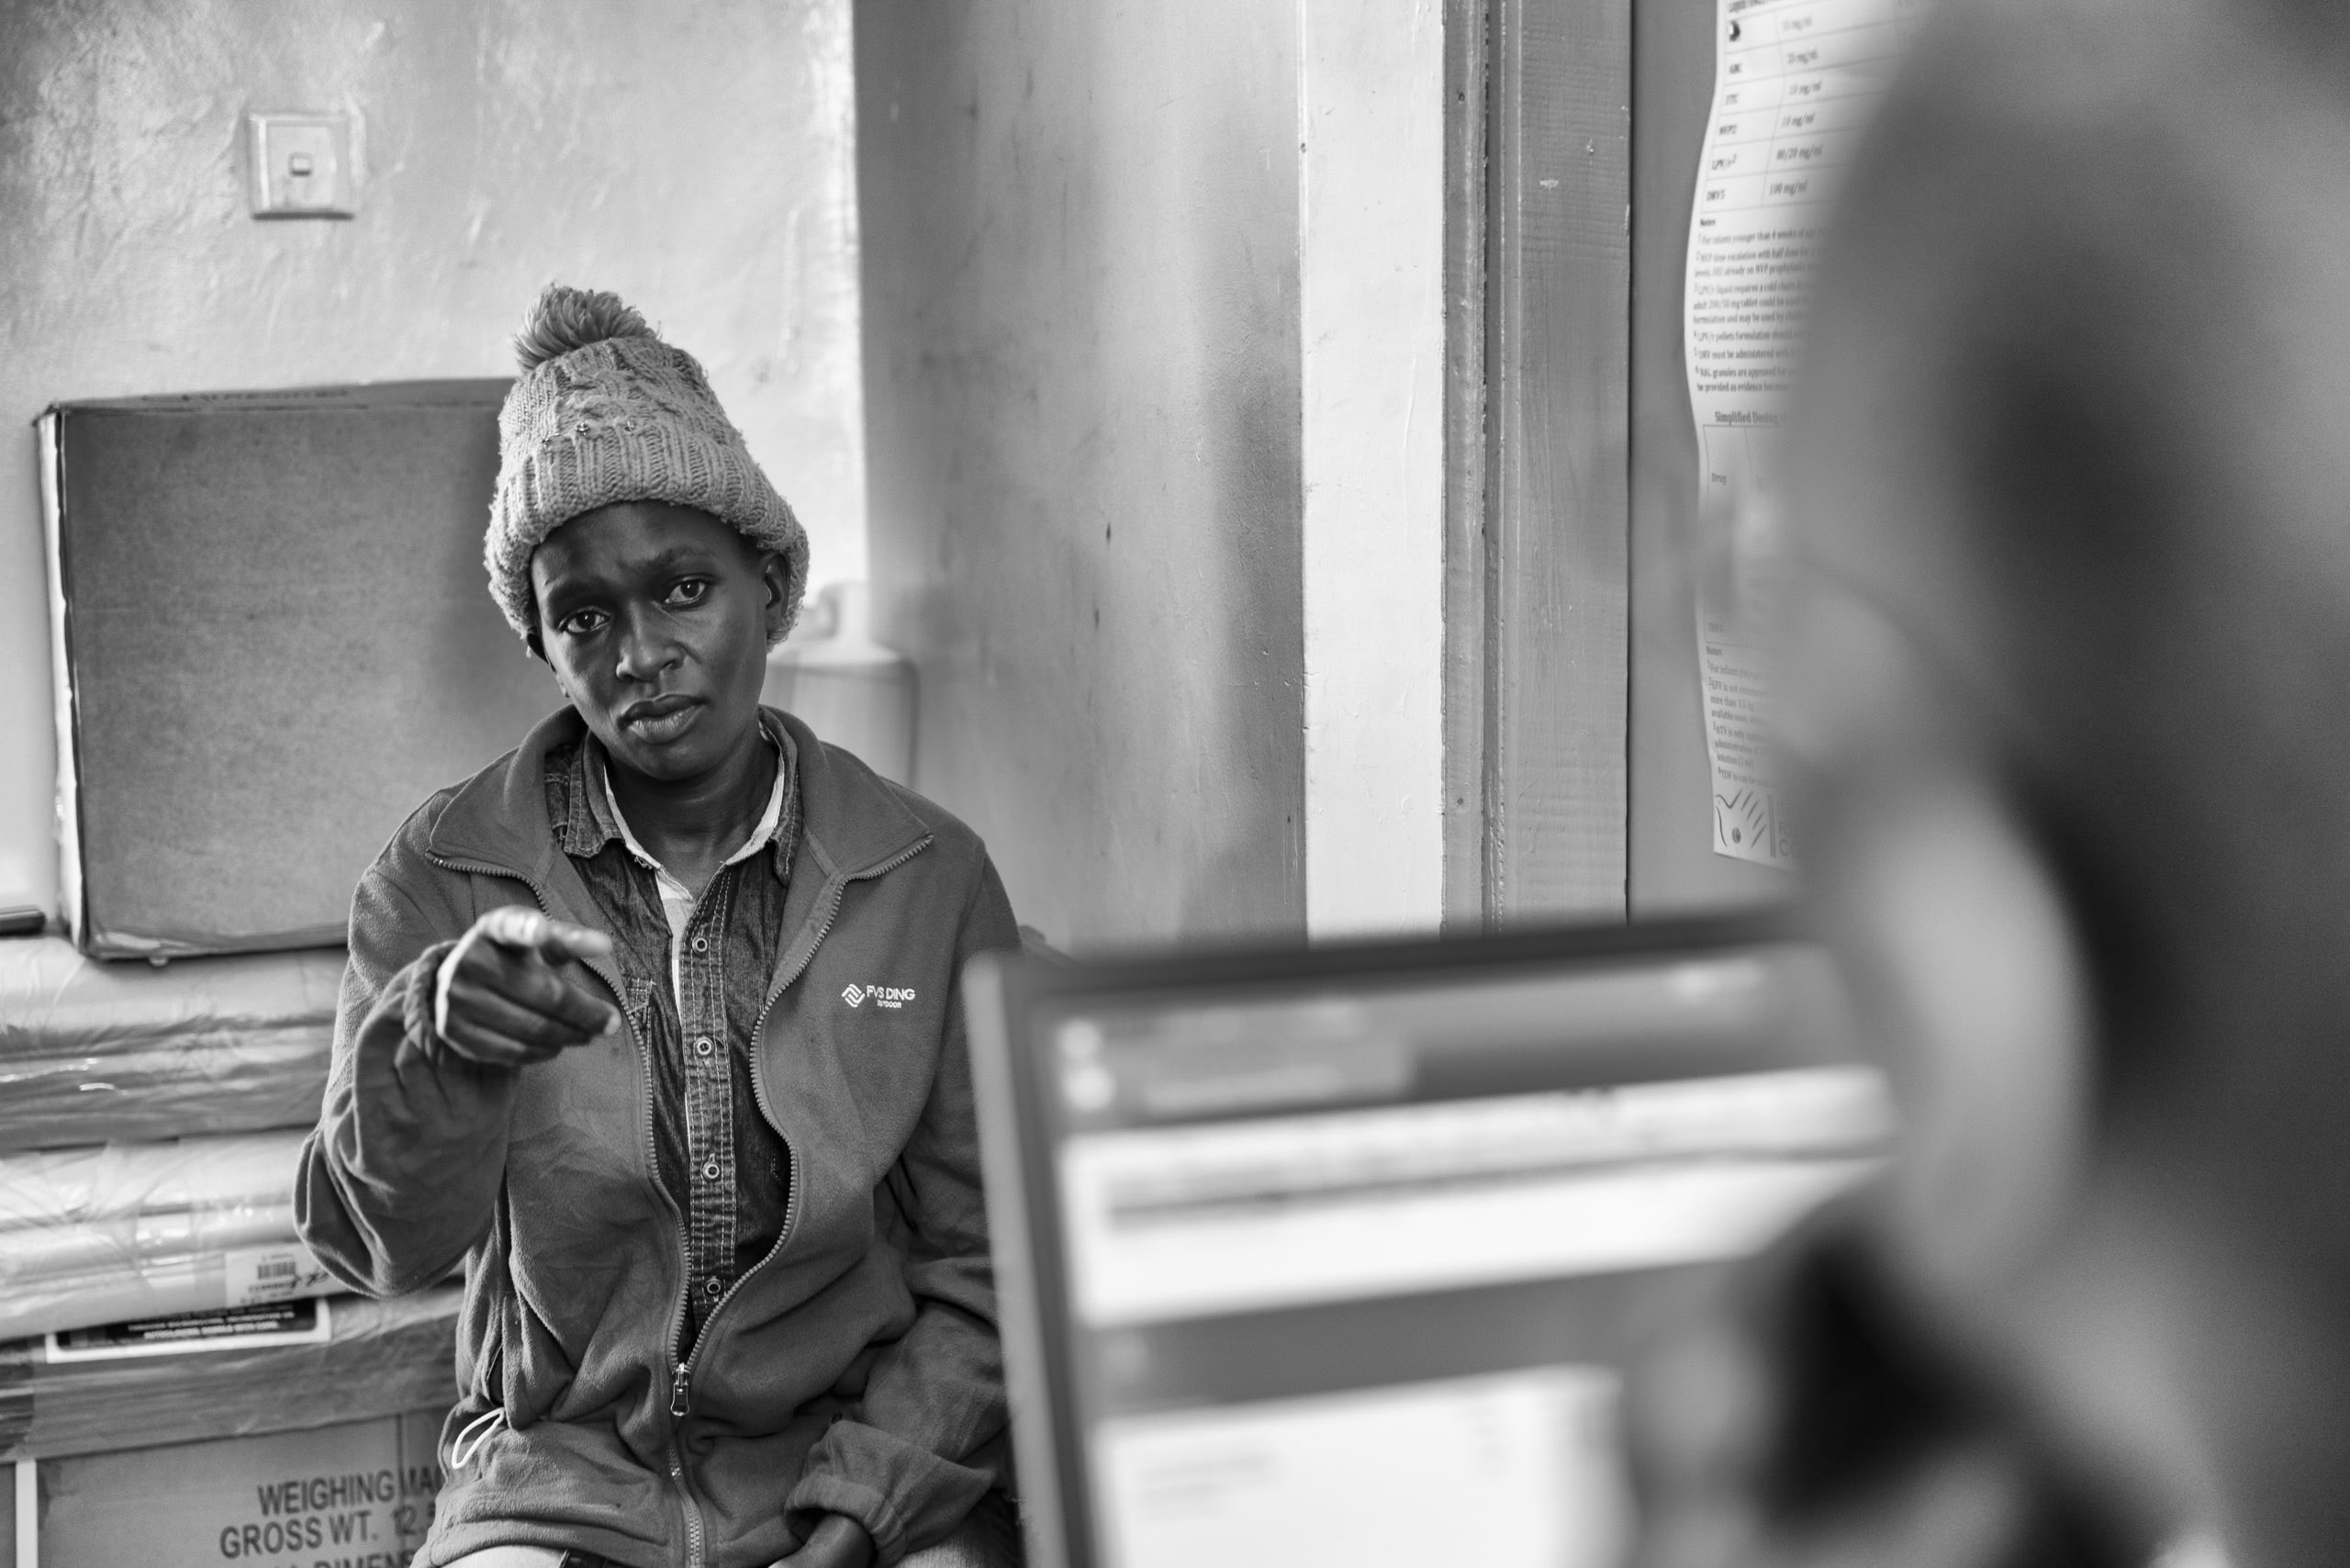 Ein Schwarzweißfoto einer Frau mit Strickmütze und Jacke, die gestikuliert, während sie mit einer Person spricht, deren Schulter und Laptop im Vordergrund zu sehen sind. Sie befinden sich in einem Innenbereich, wahrscheinlich in einem Büro. © Fotografie Tomas Rodriguez